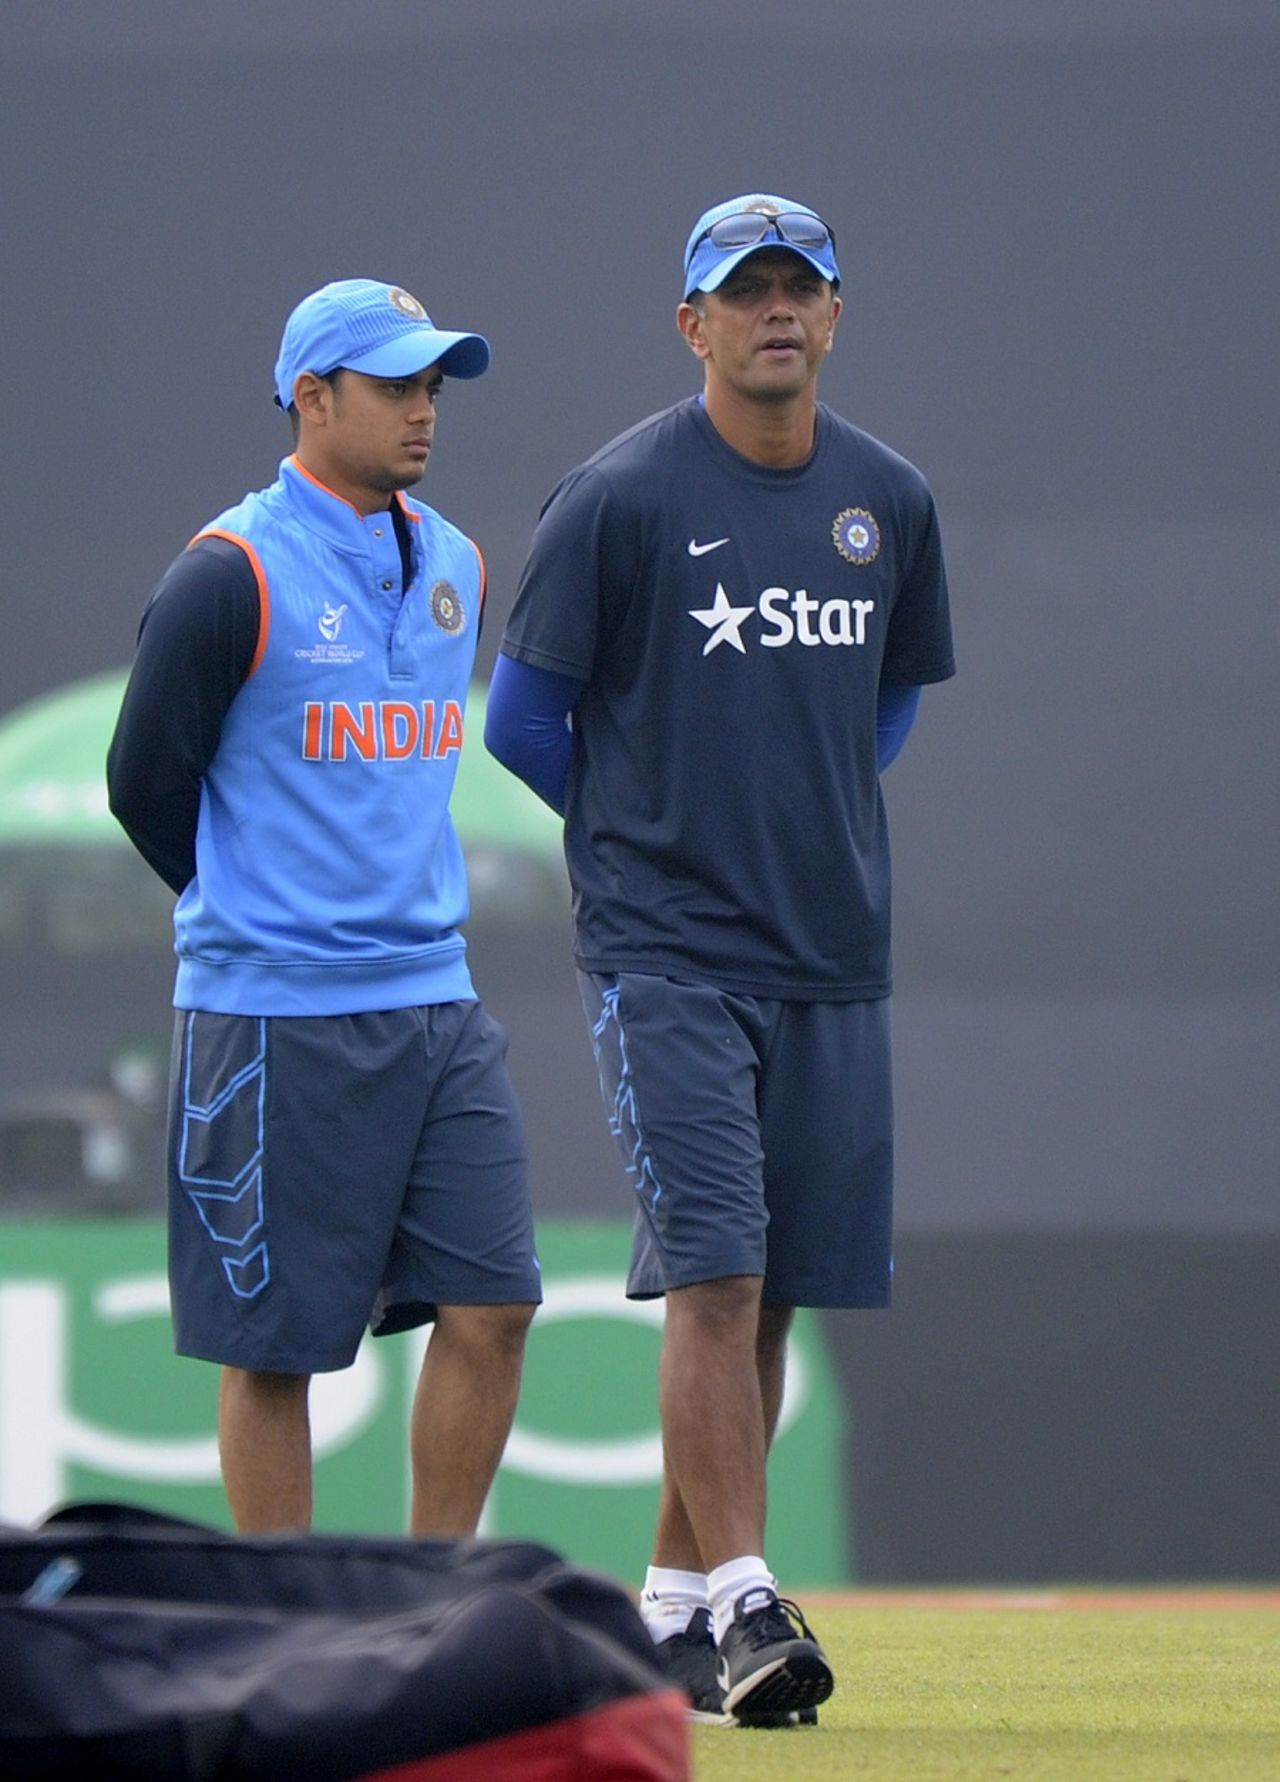 Ishan Kishan and Rahul Dravid have a chat, India v Sri Lanka, Under-19 World Cup 2016, Mirpur